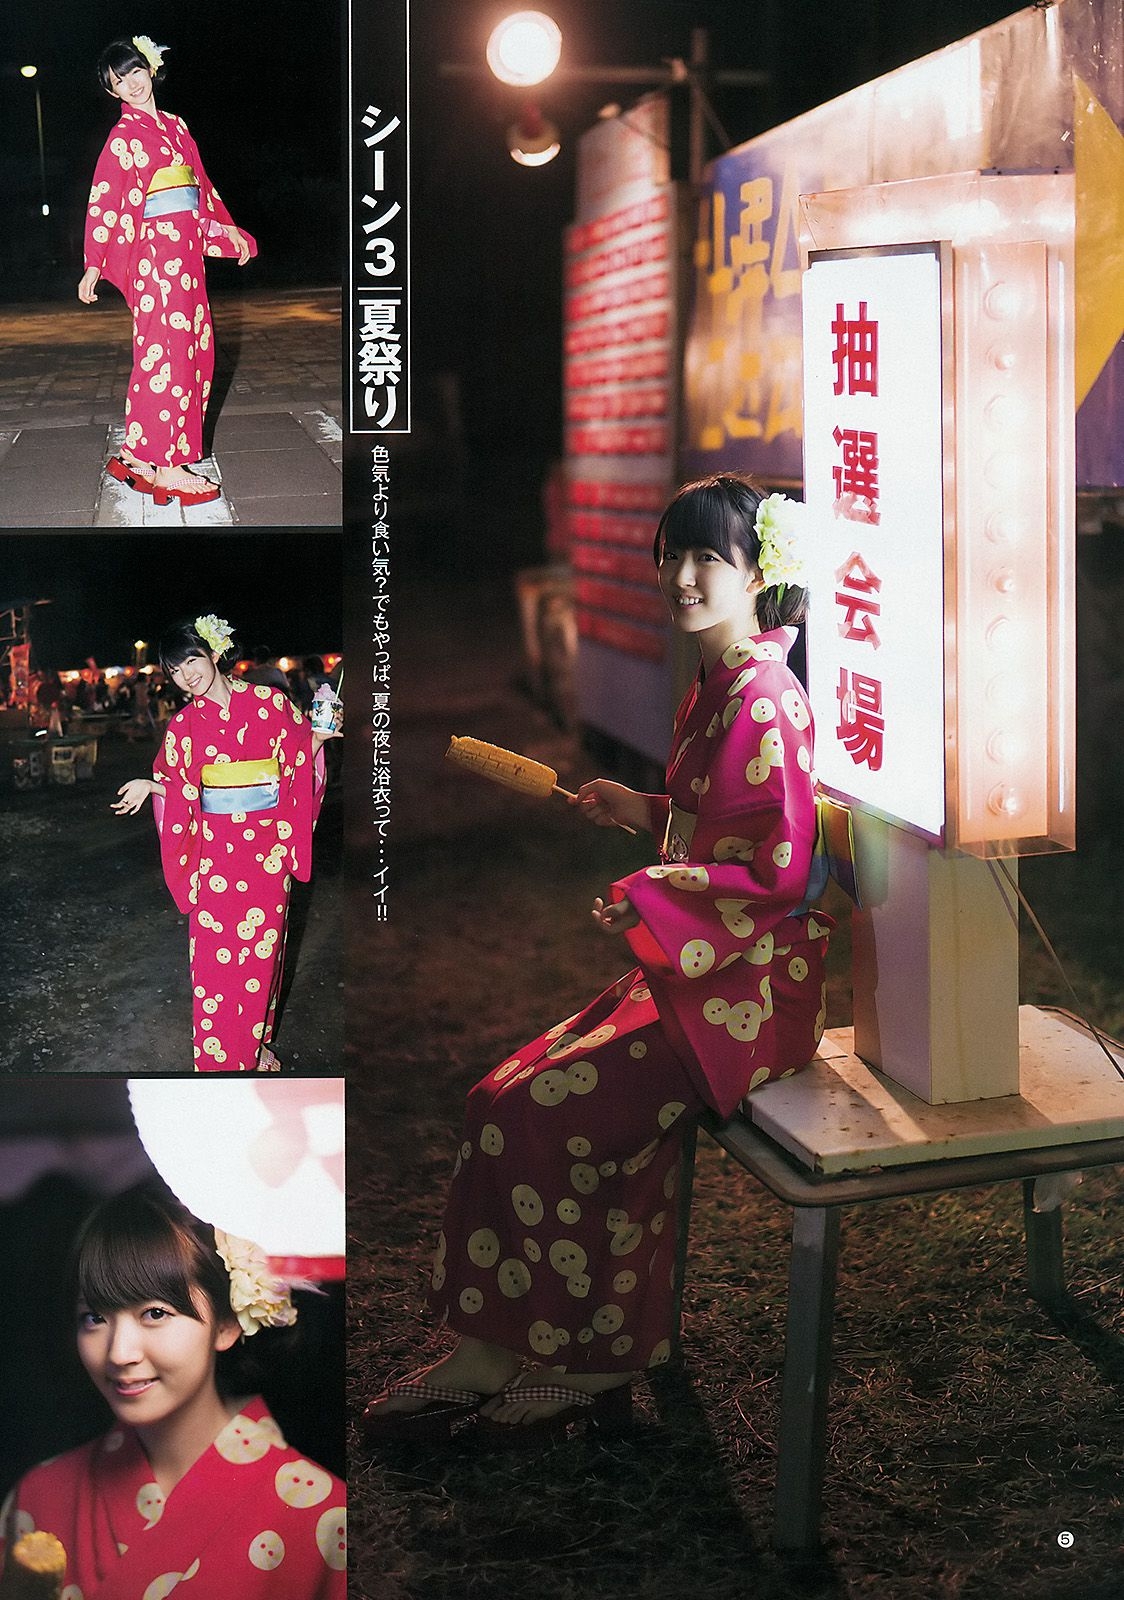 鈴木愛理 モーニング娘。 スマイレージ [Weekly Young Jump] 2012年No.39 写真杂志 